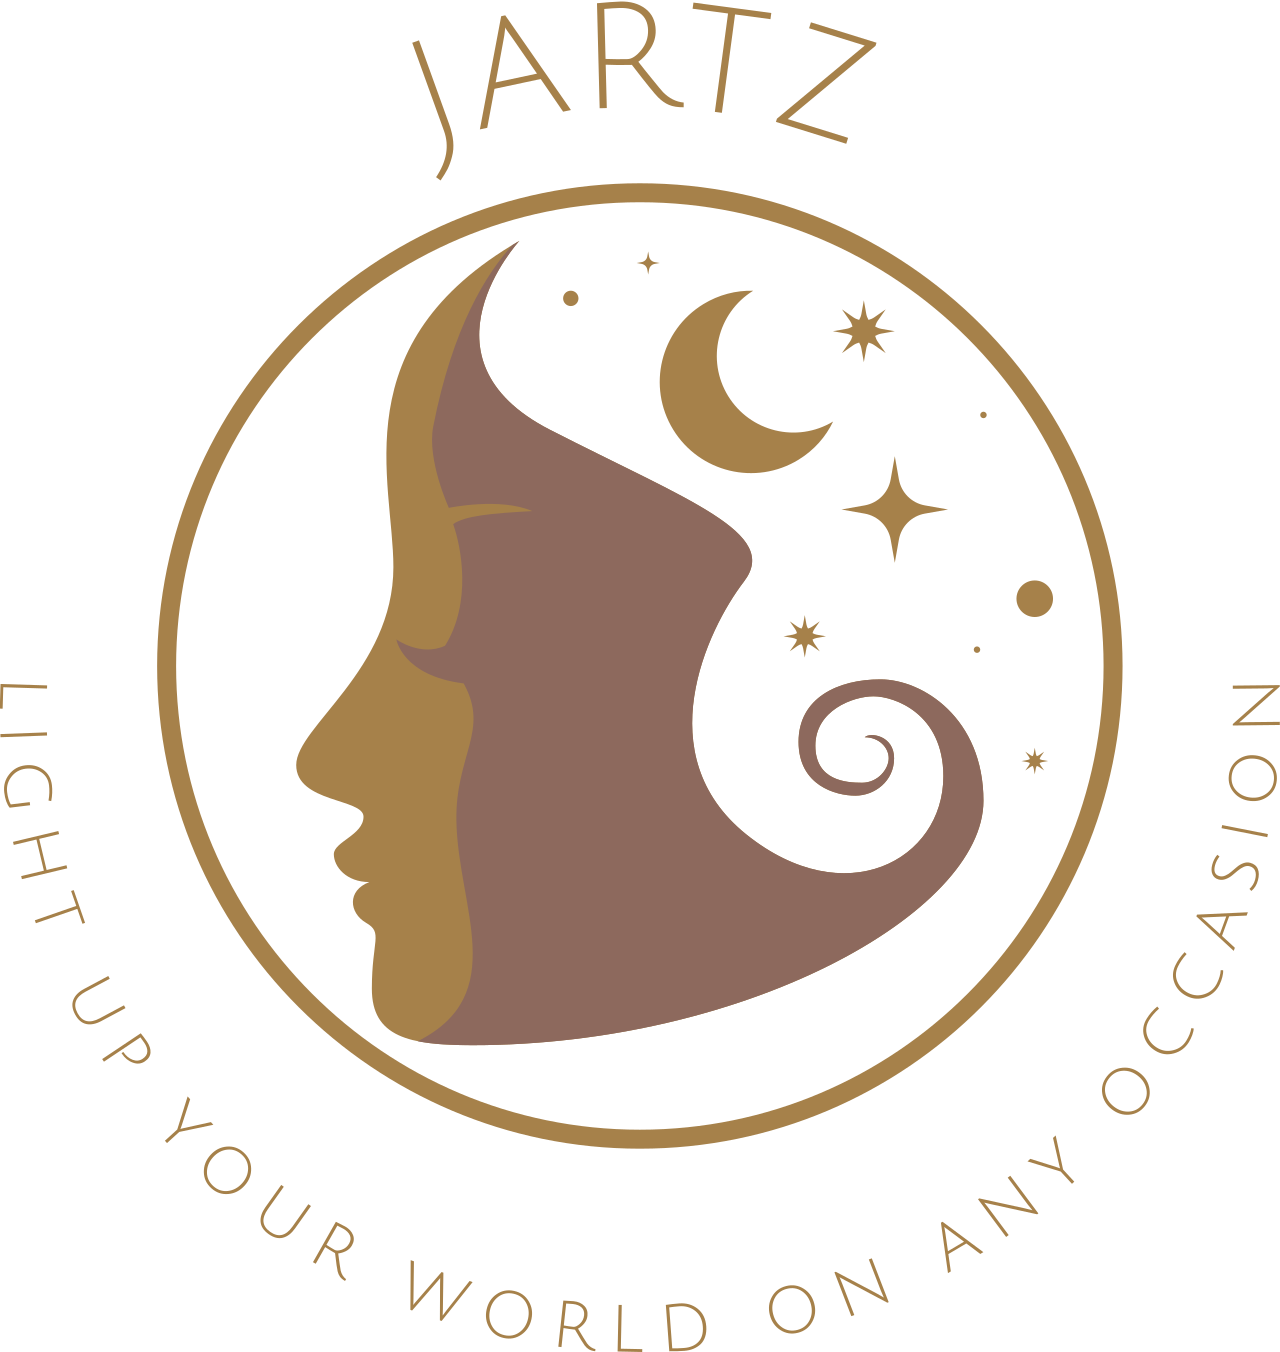 JARTZ's web page